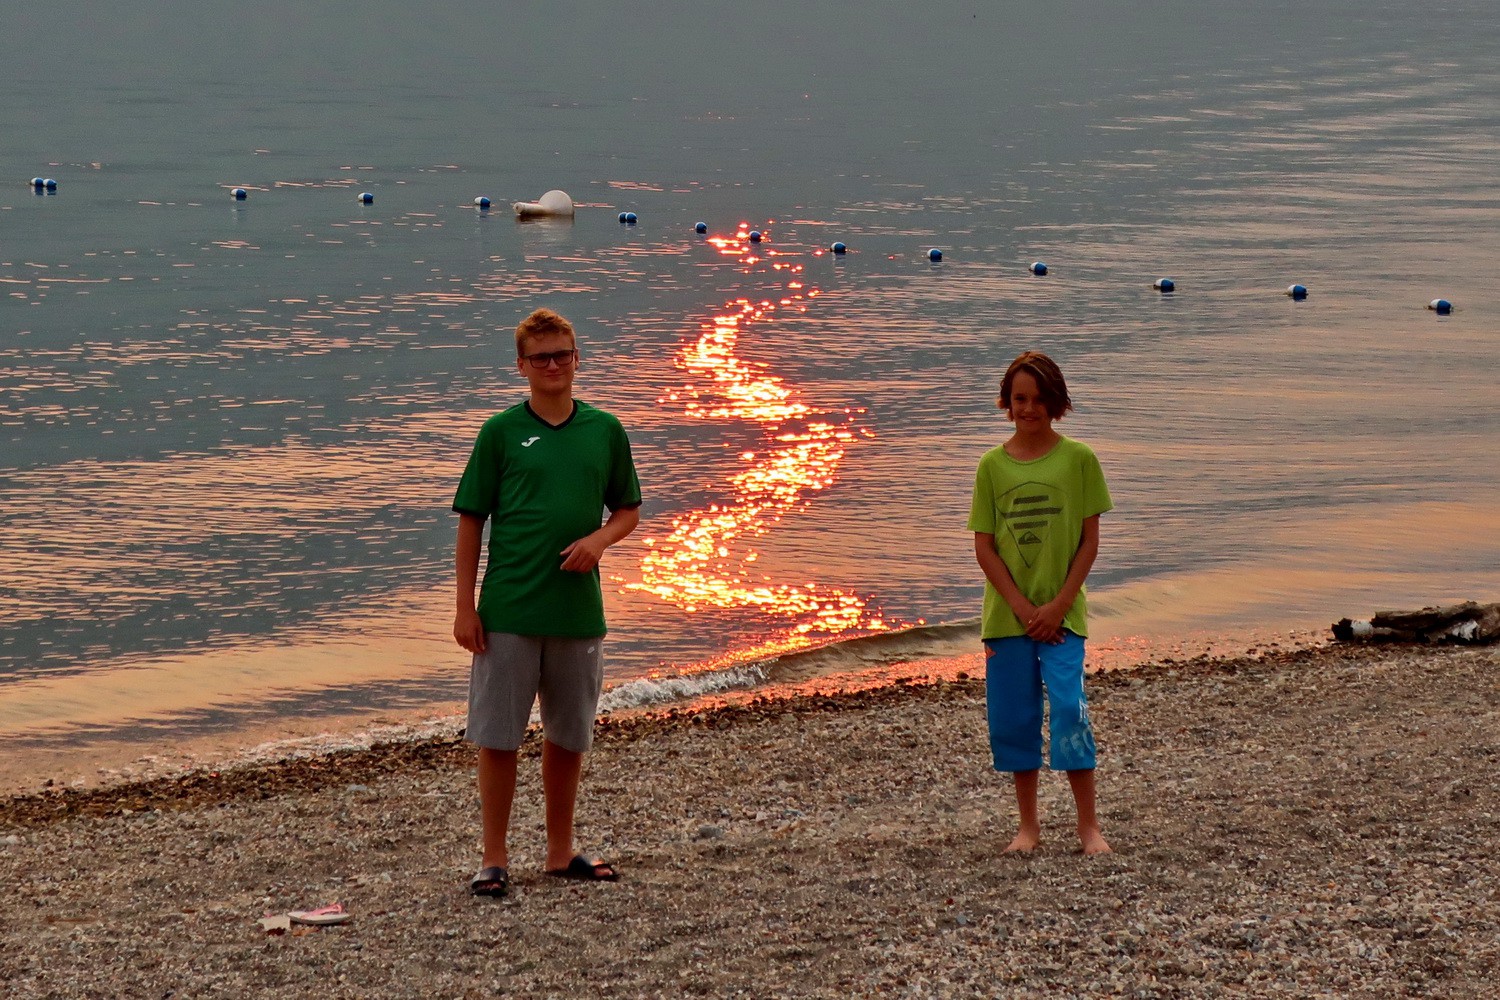 Kuba and Jay on burning Shuswap Lake at sunset